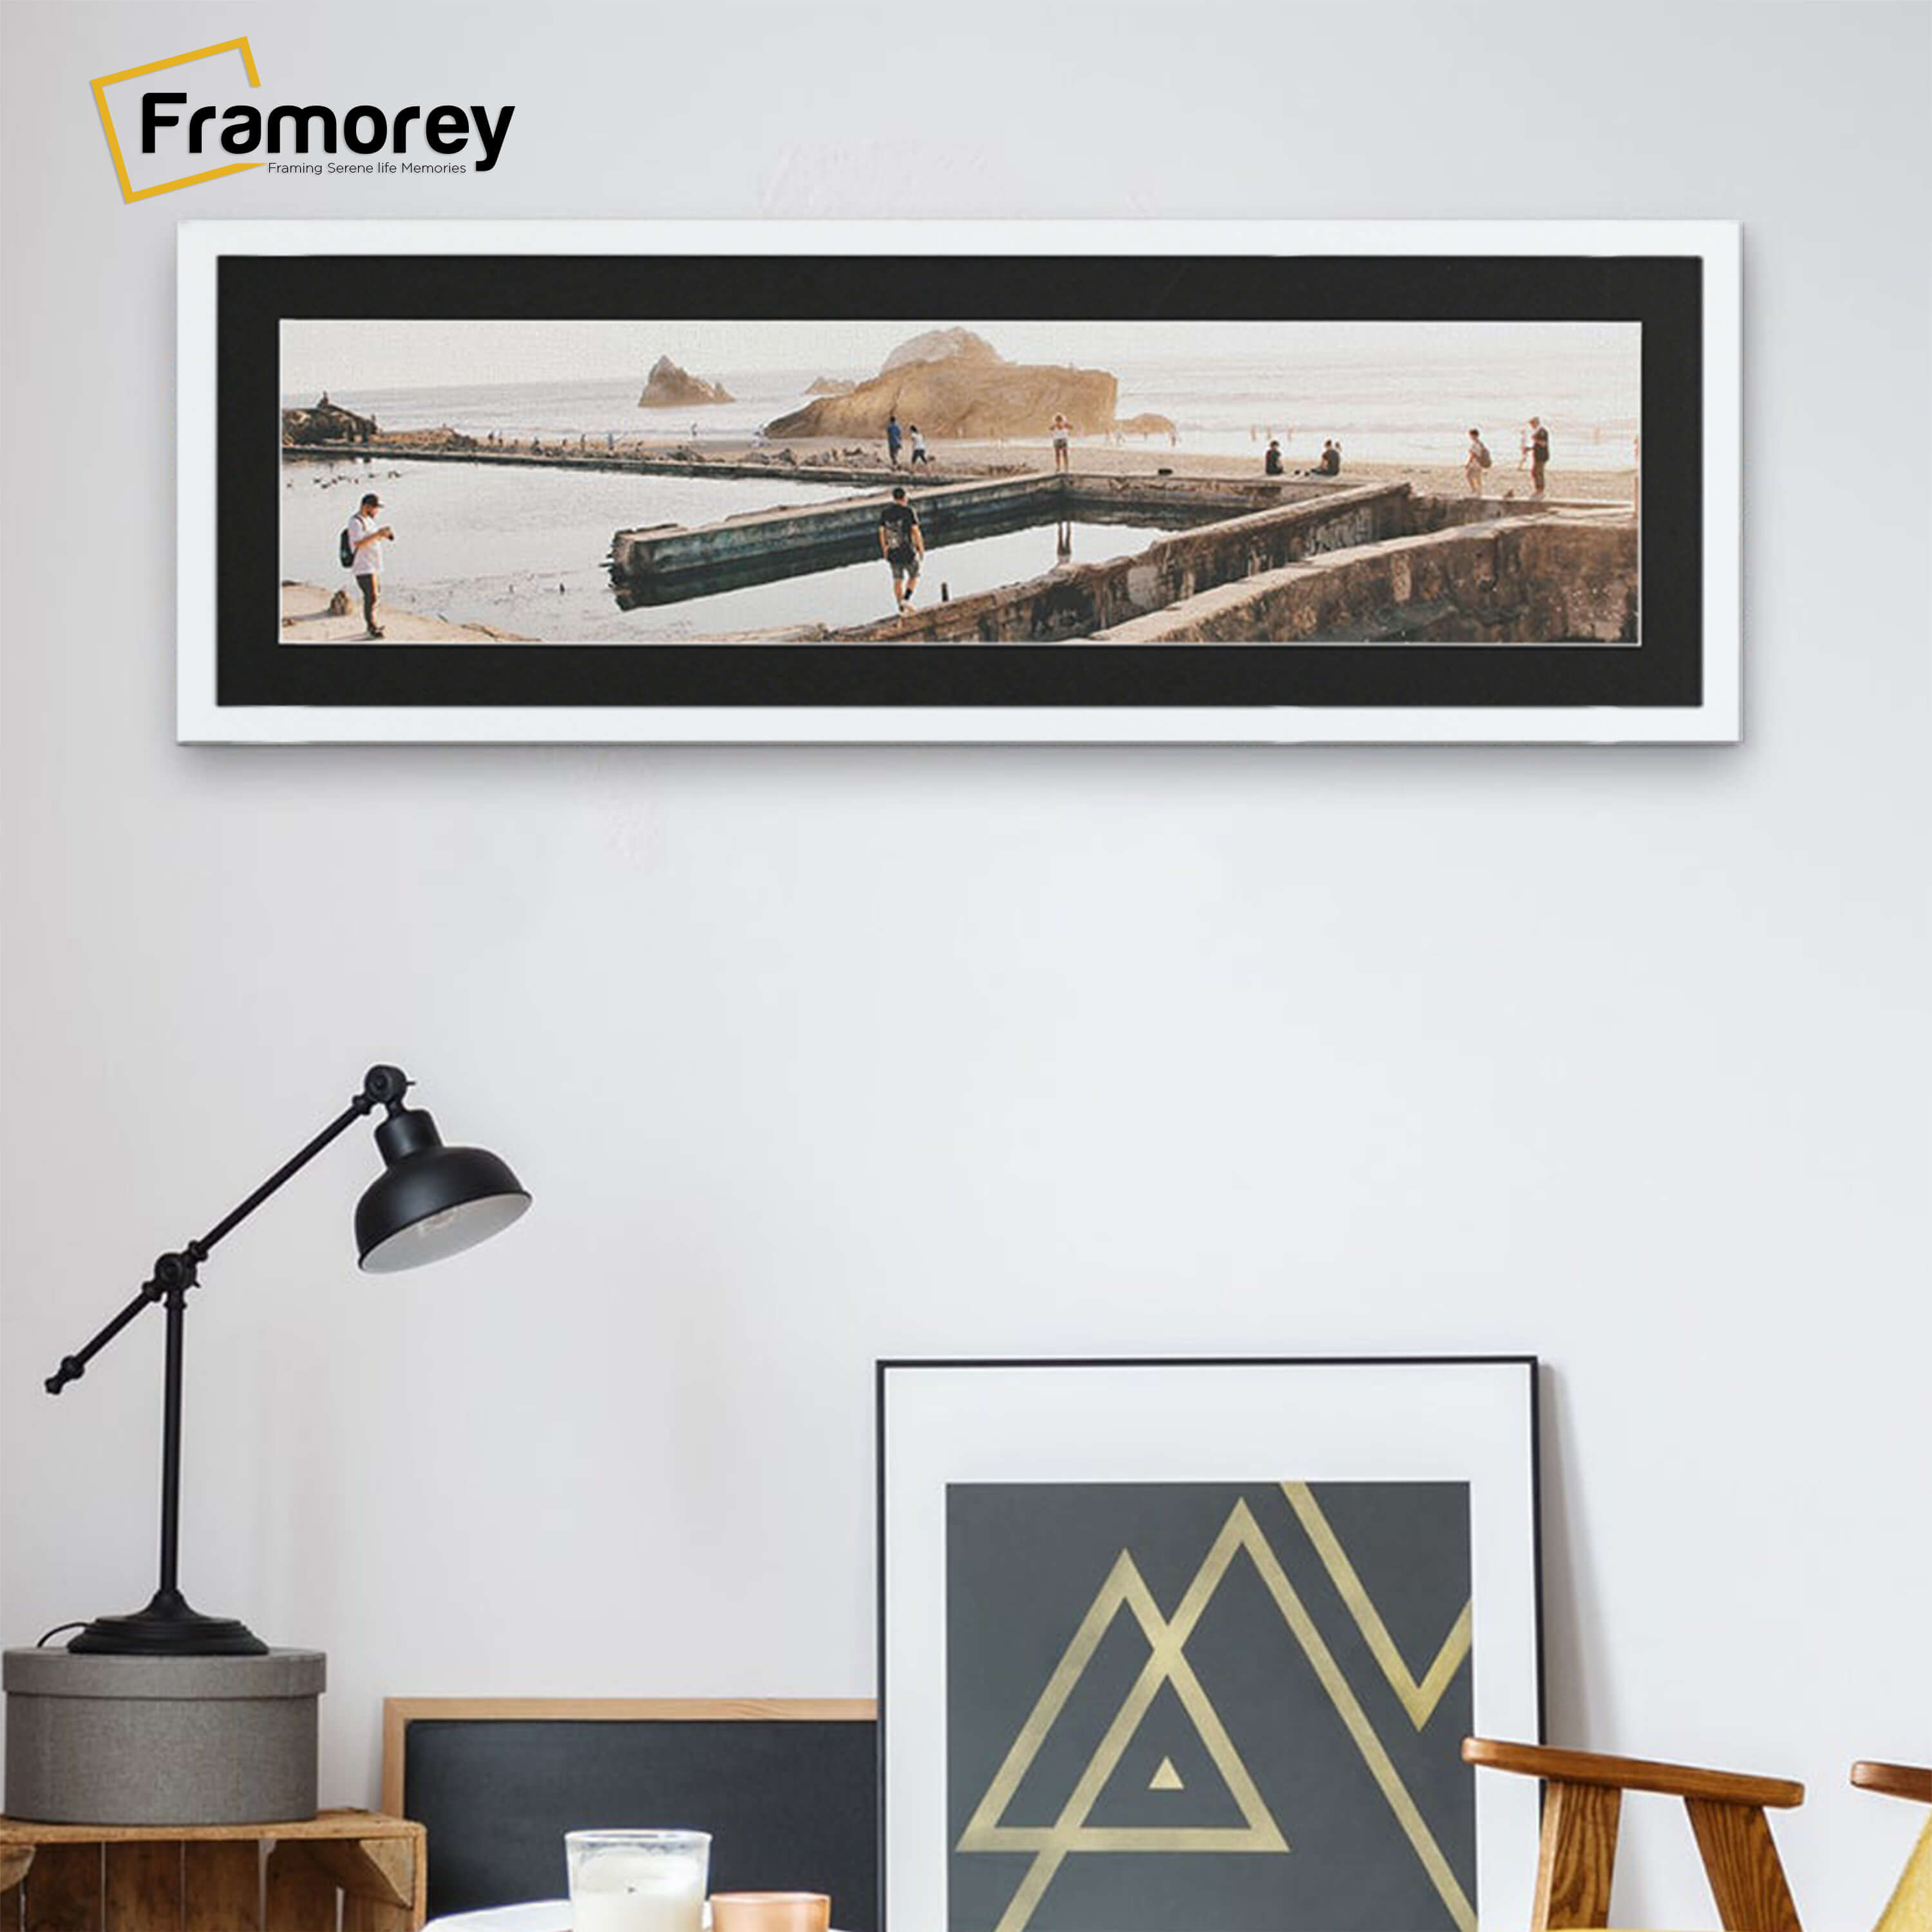 White Thin Matt Panoramic Photo Frames With Black Mount